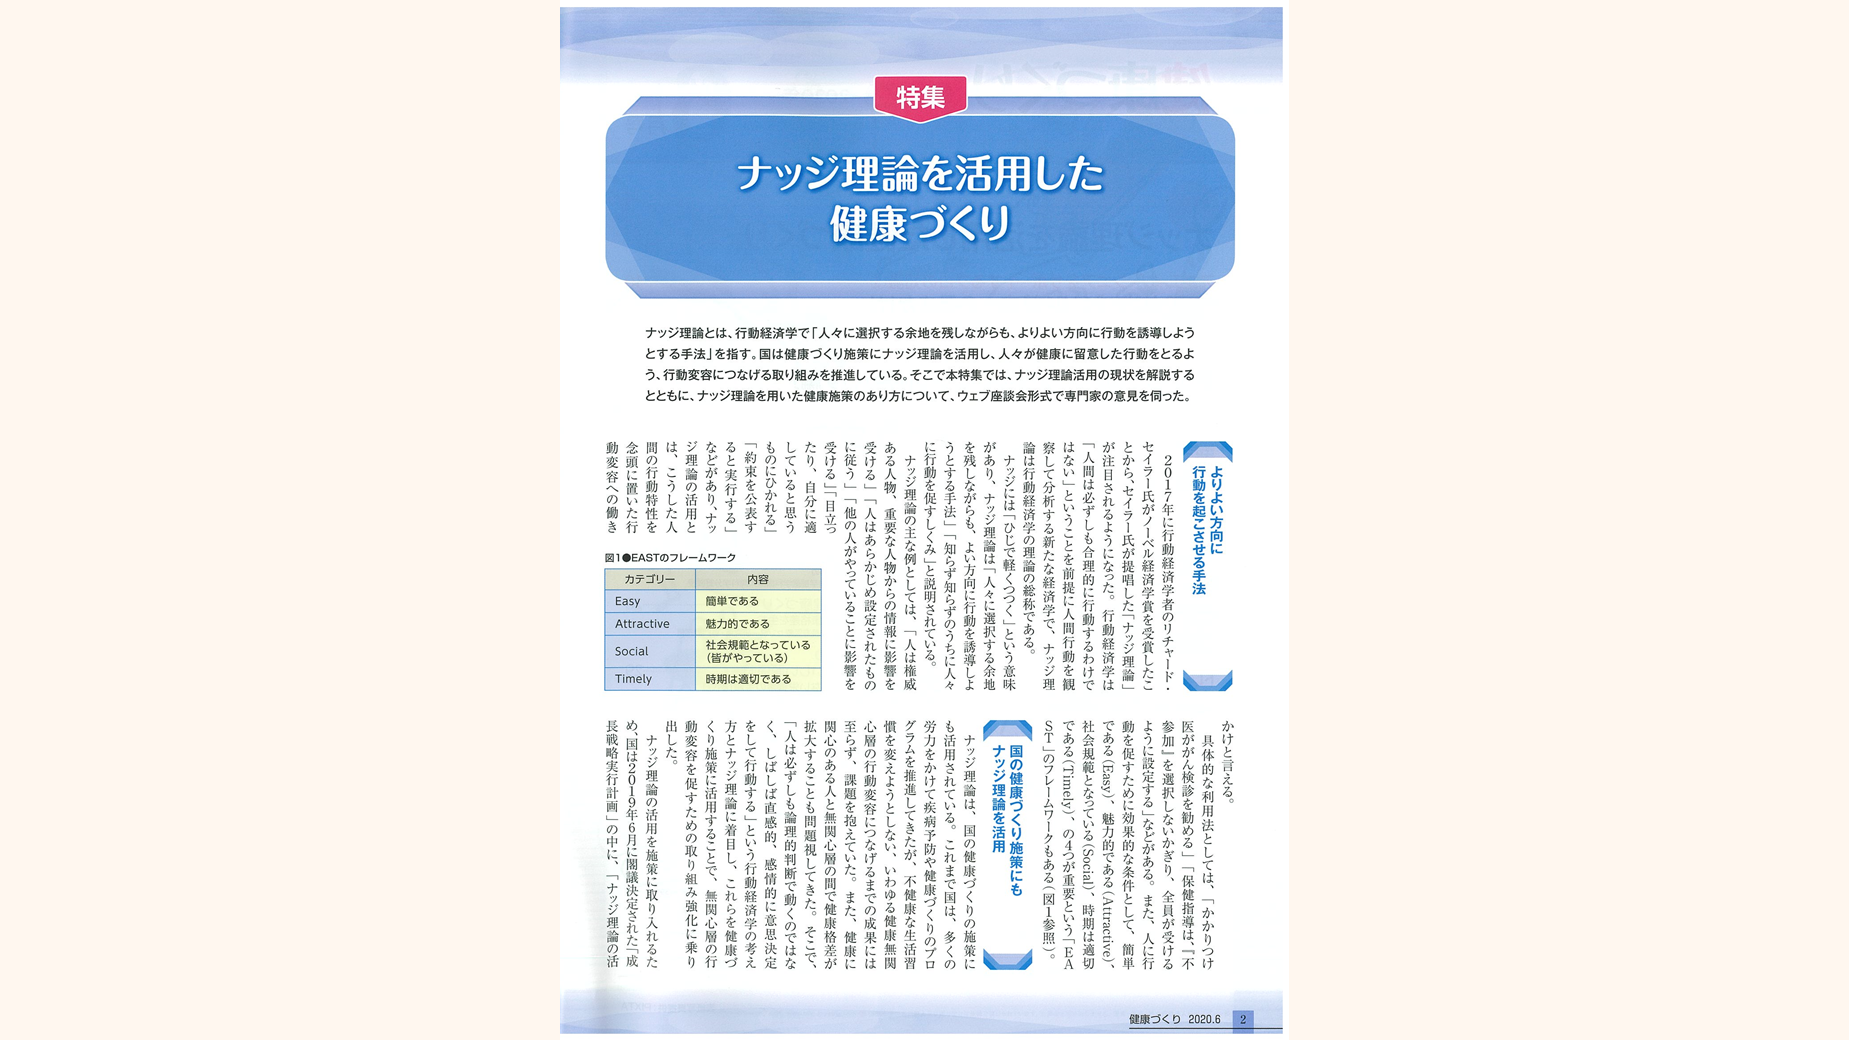 月刊「健康づくり」令和2年6月号に掲載